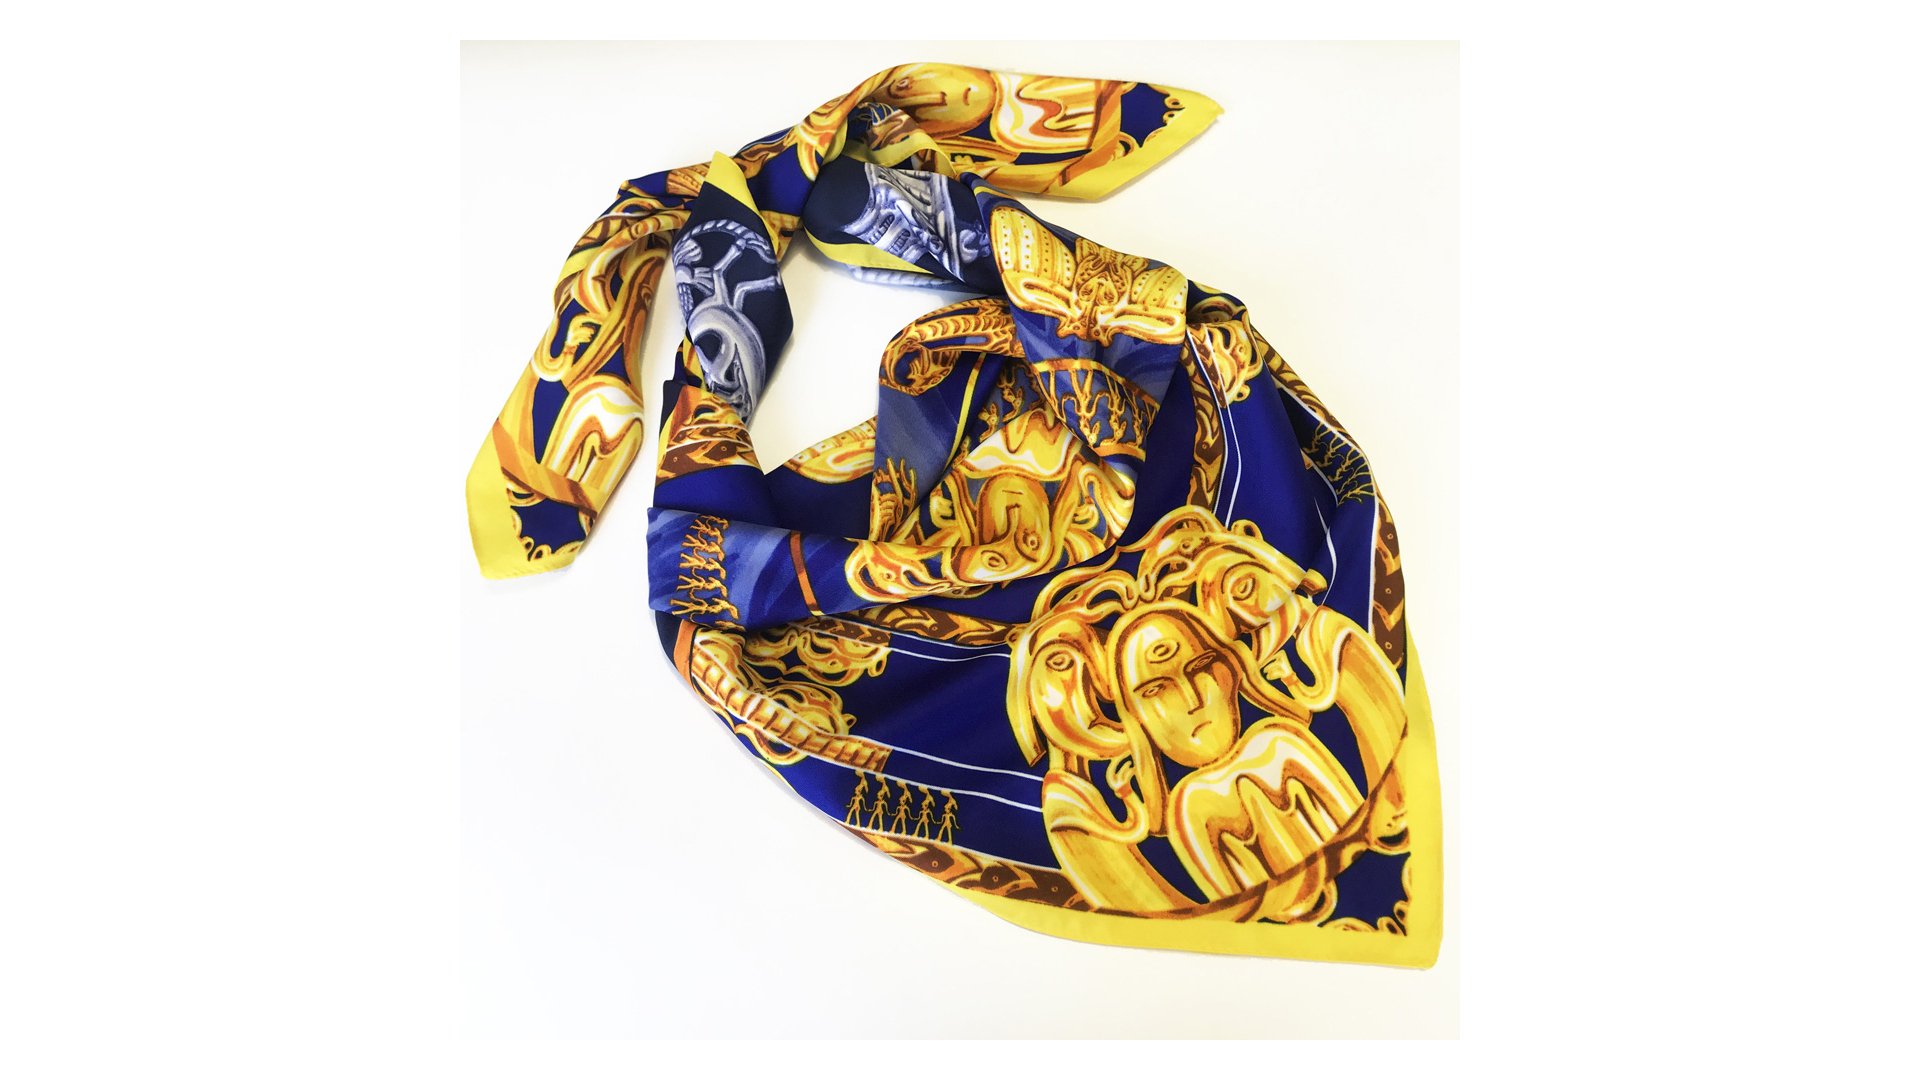 Платок сувенирный Русские в моде Пермский звериный стиль 90х90 см, шелк, вискоза, машинная подшивка